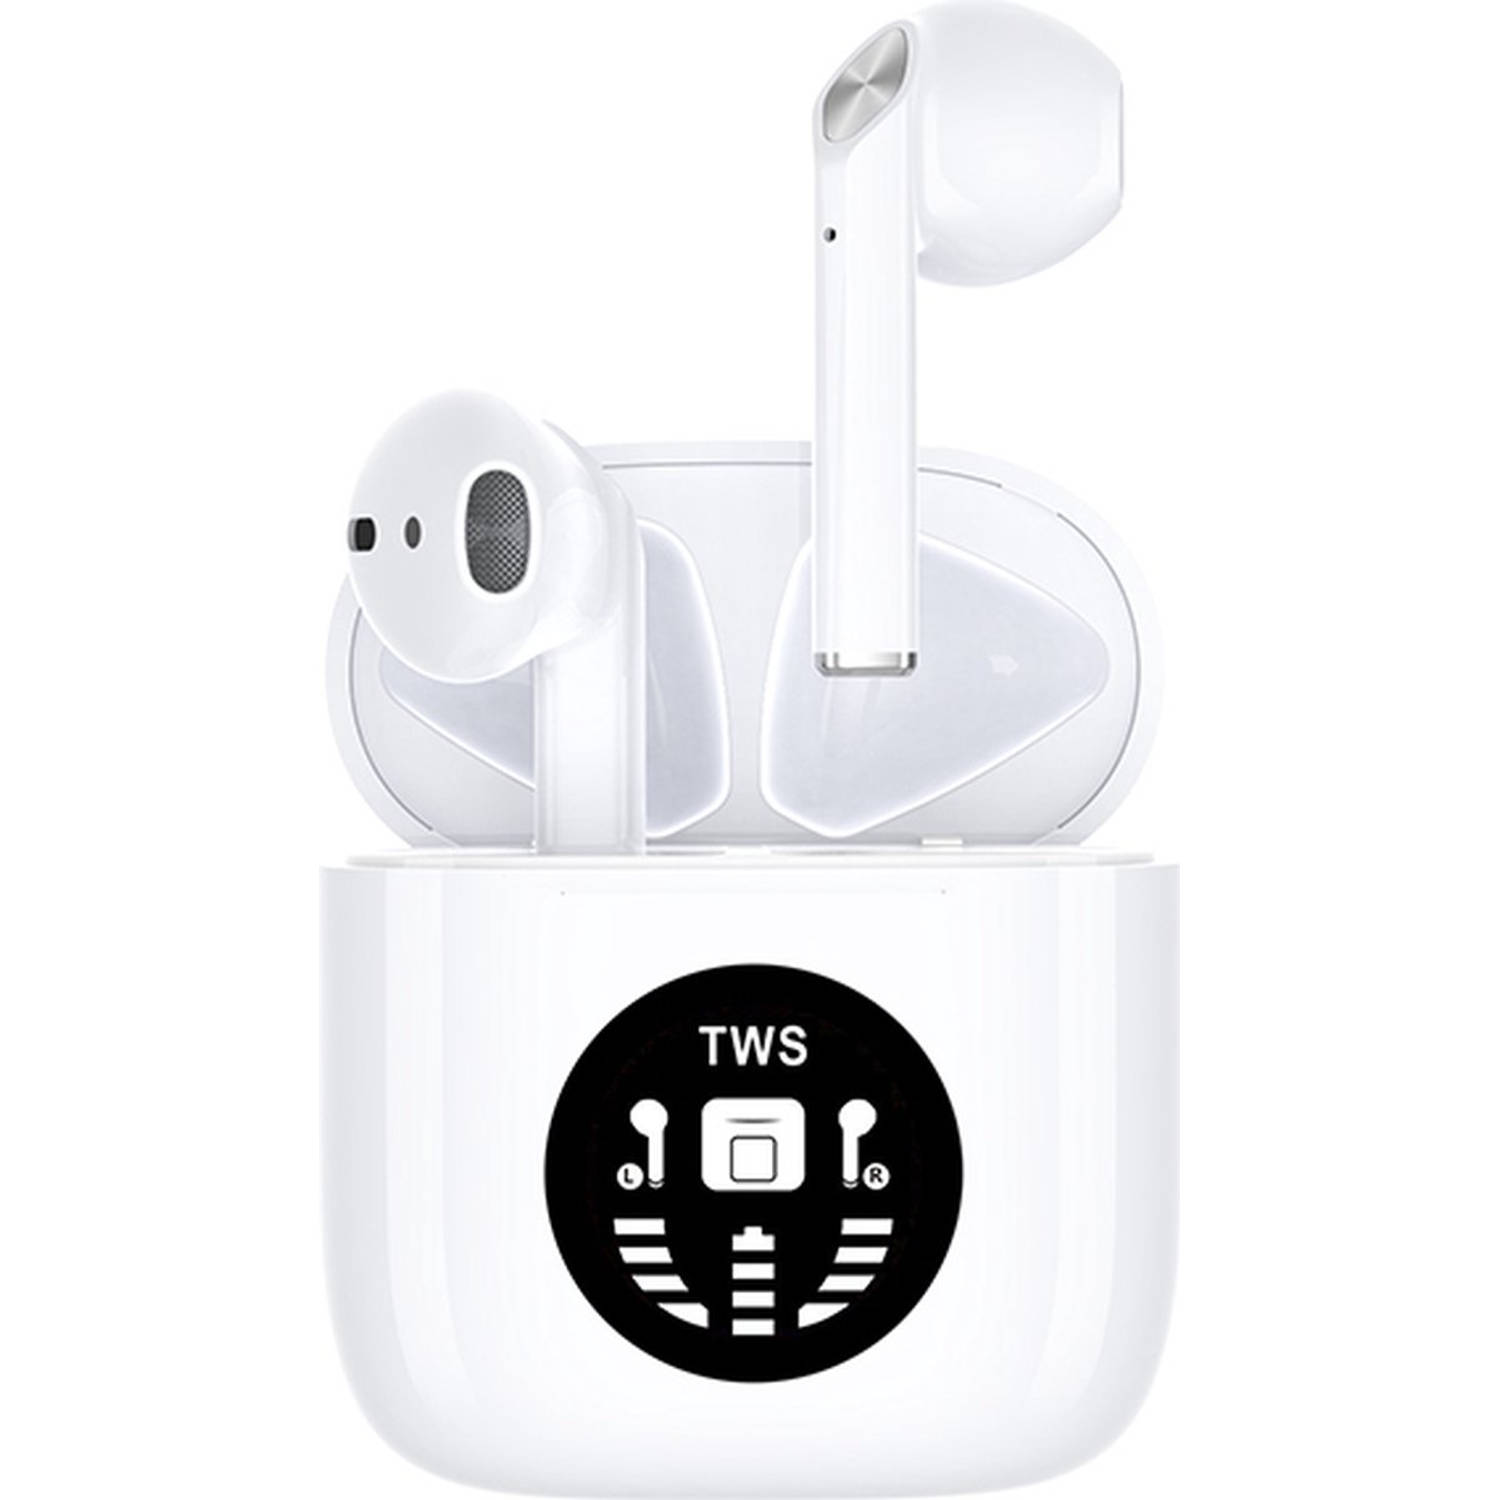 JAP Sounds AP80 - Draadloze oordopjes met oplaadcase - 24/u Luistertijd - Bluetooth - Earbuds wireless - Sport oortjes - Geschikt voor apple, iphone, android, samsung etc.